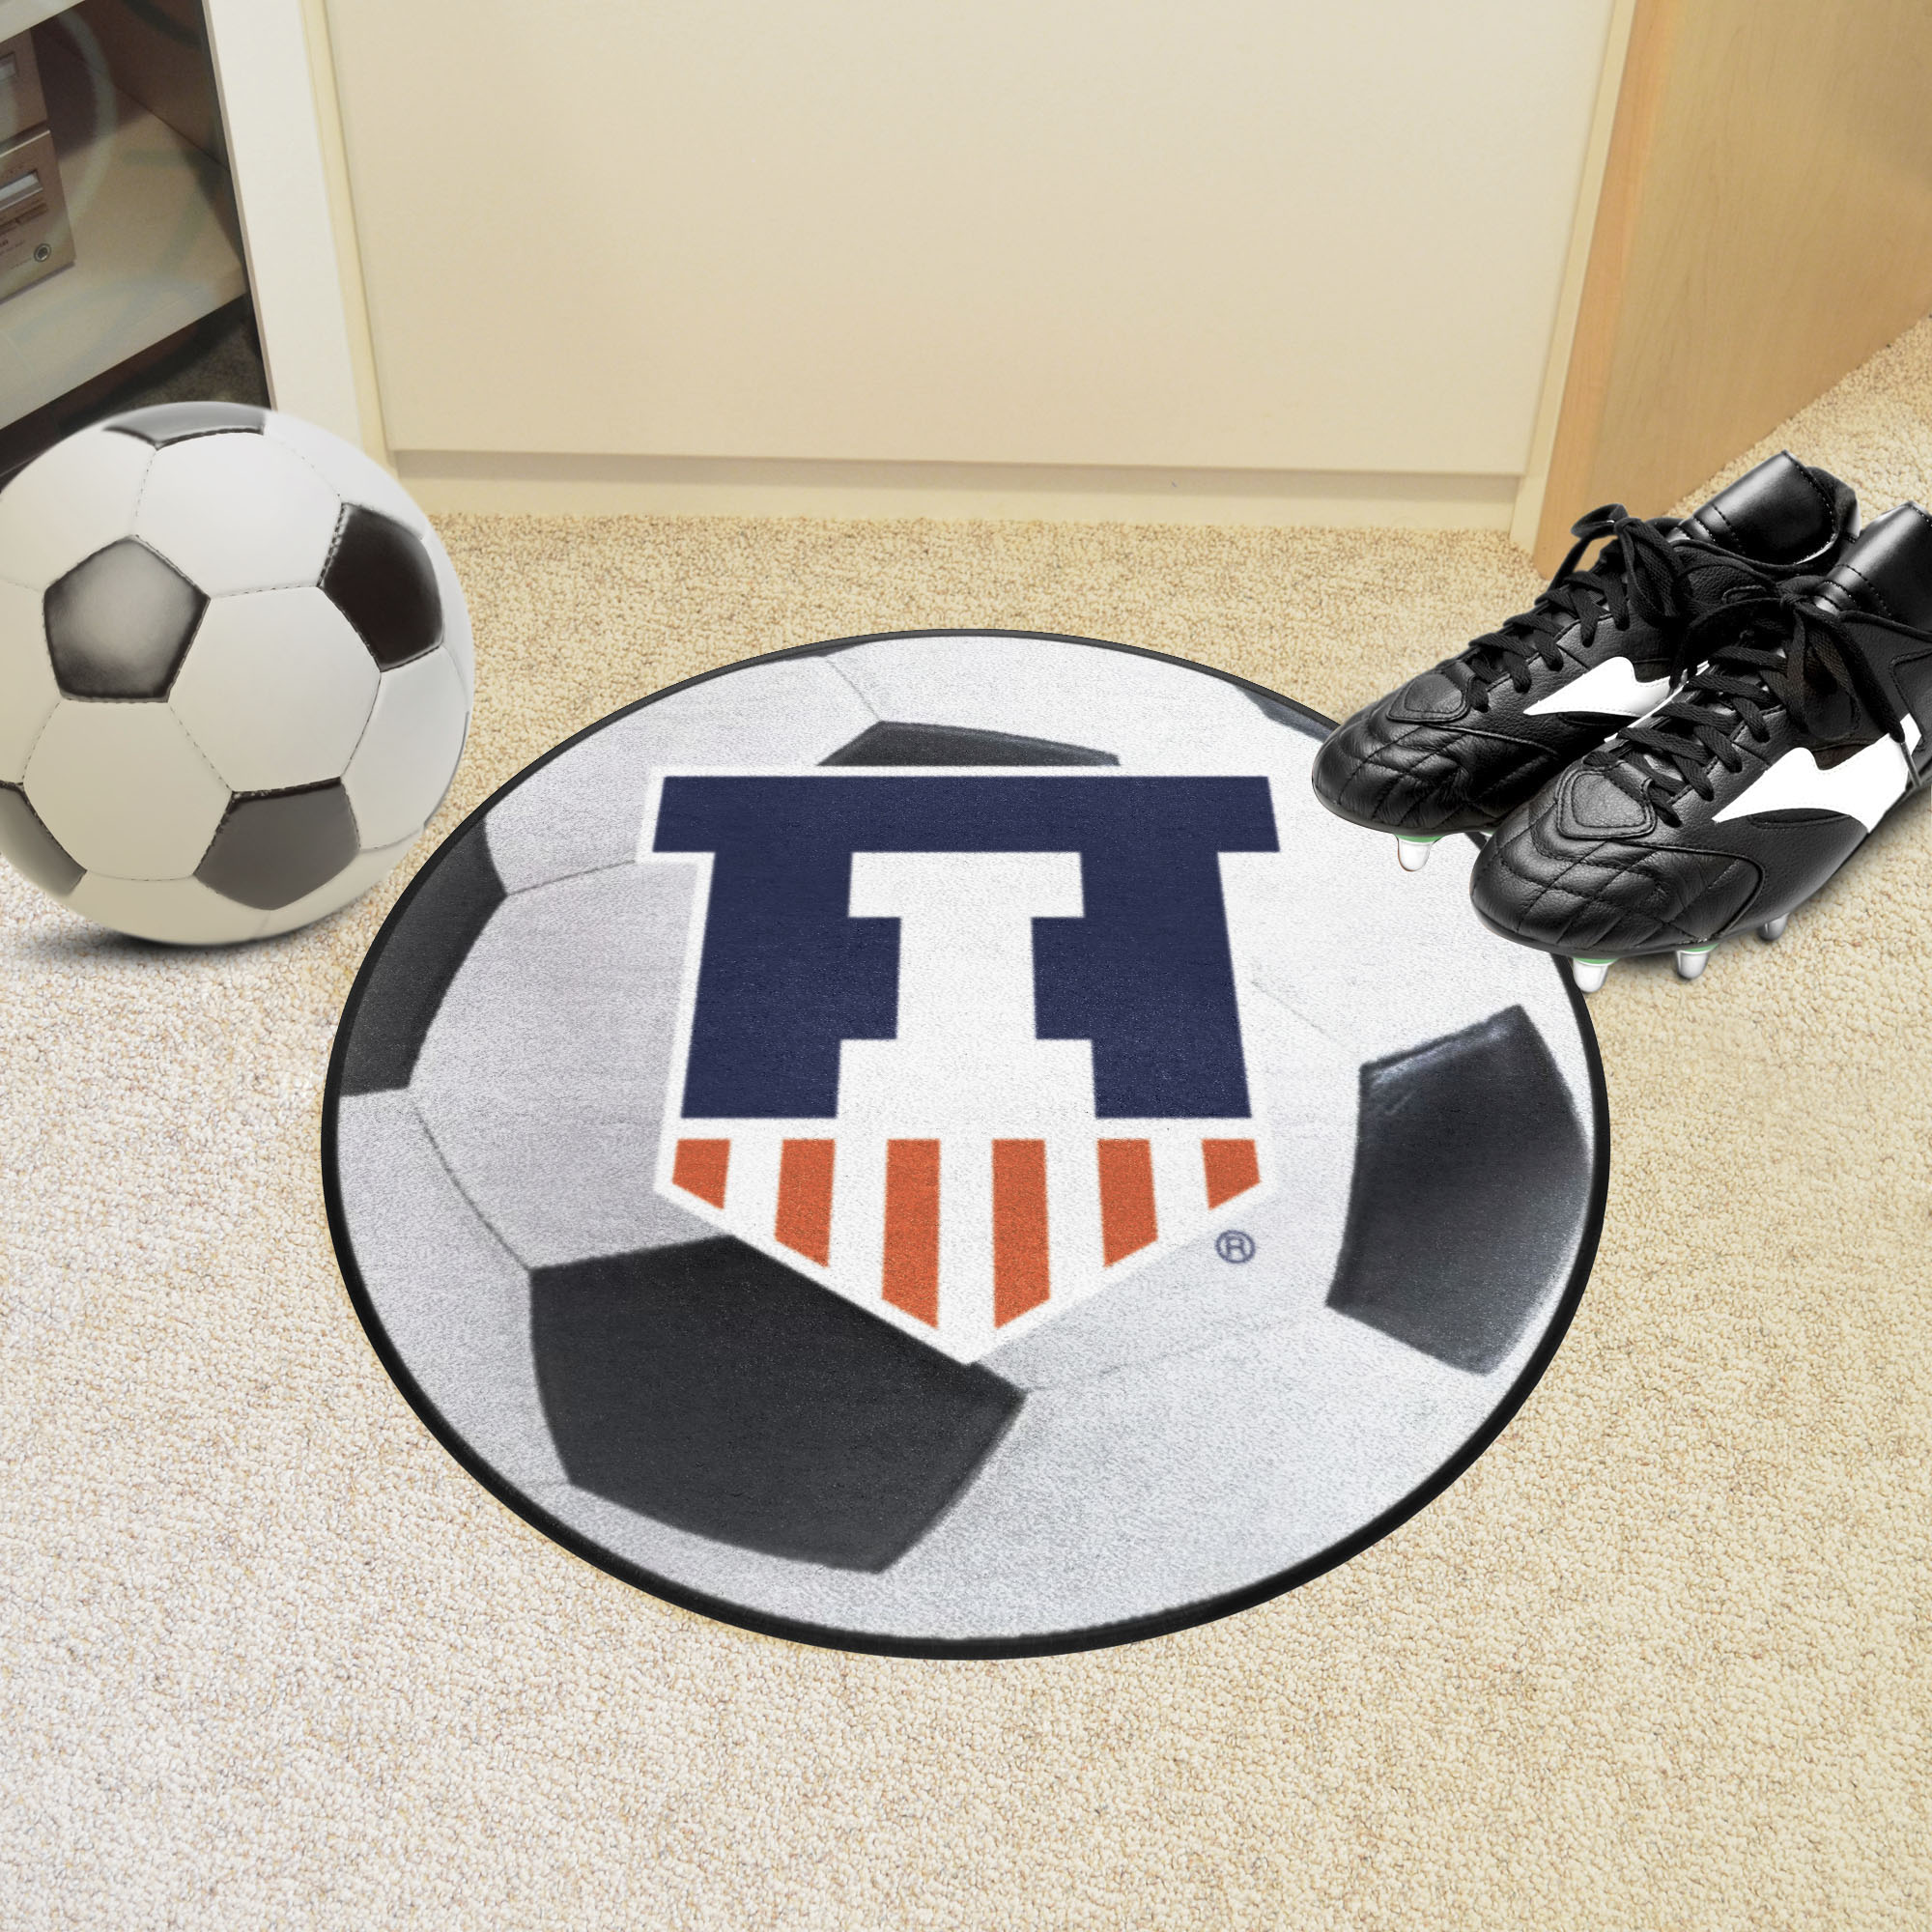 Illinois Illini Logo Soccer Ball Shaped Area Rug